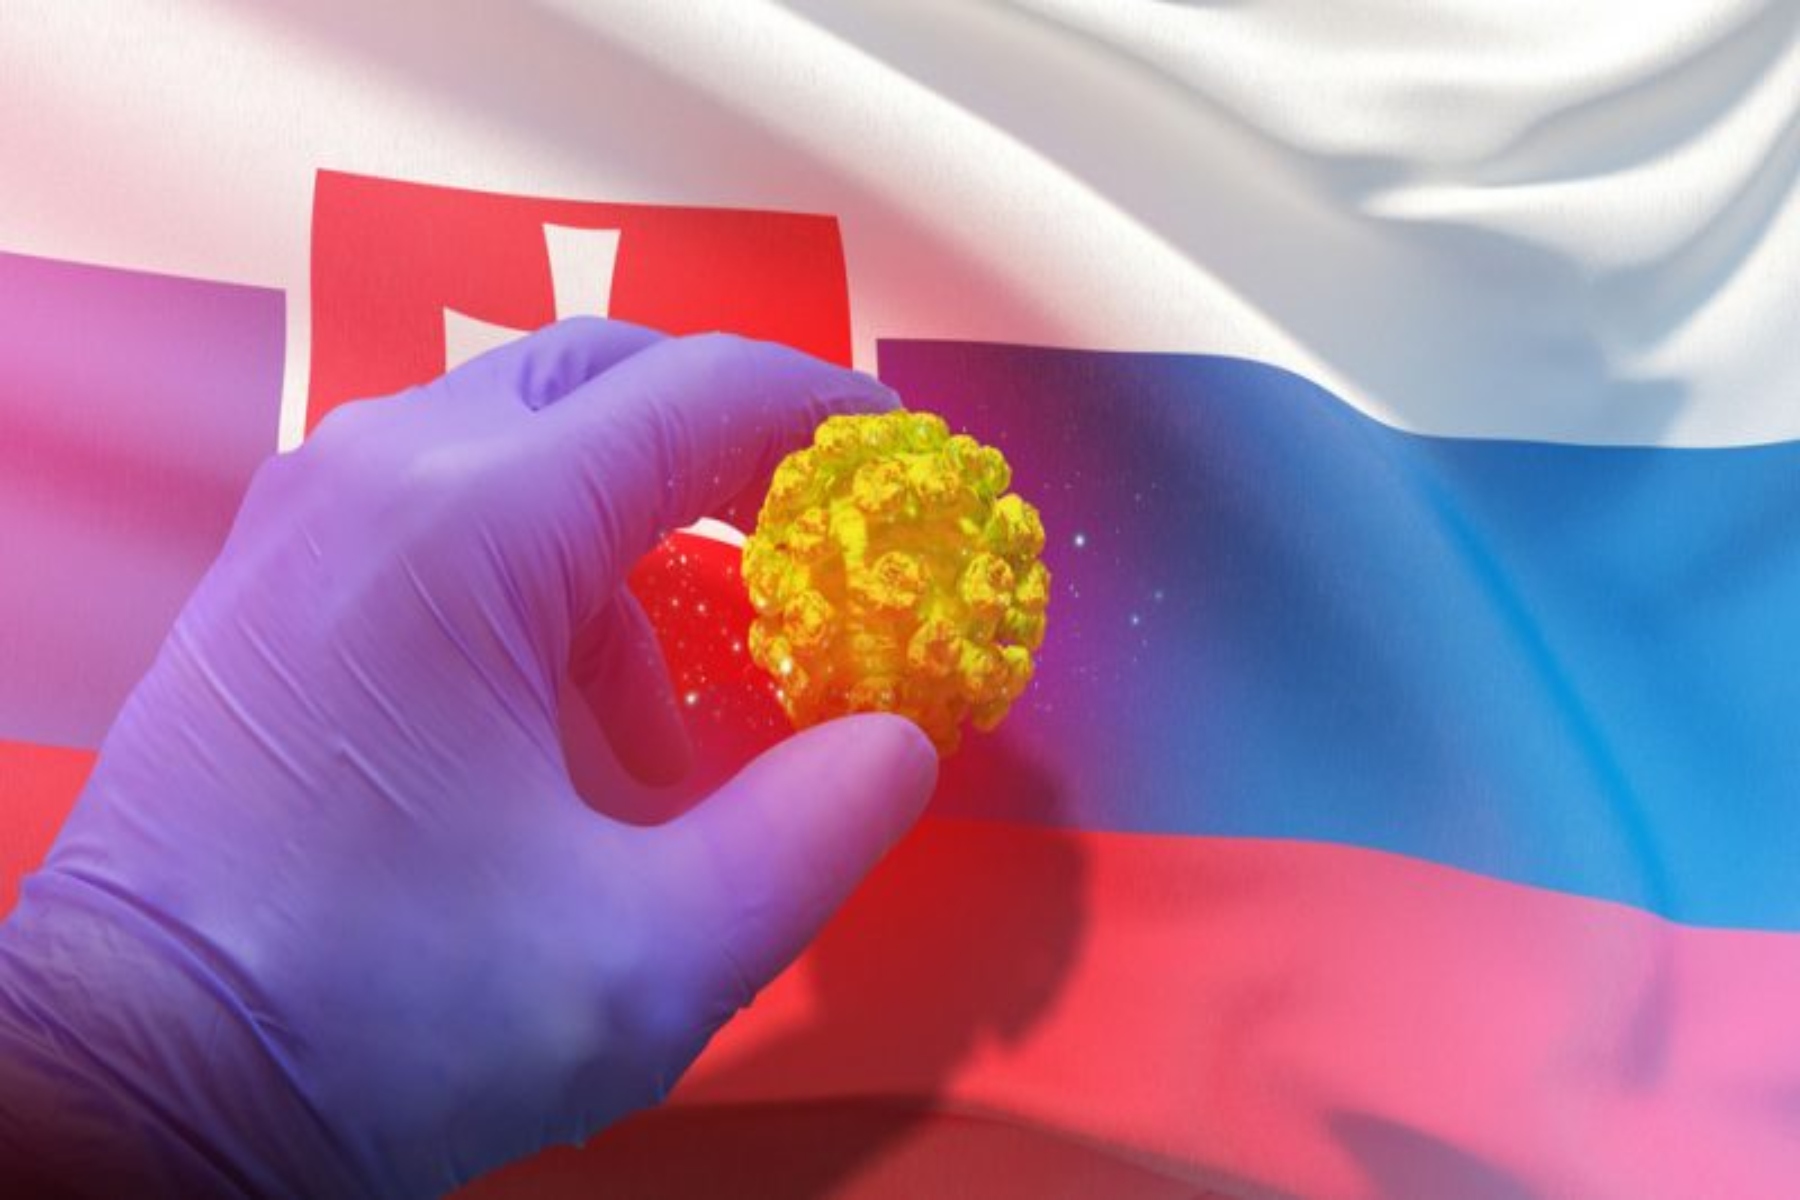 Σλοβακία κορωνοϊός: Μαύρο ρεκόρ κρουσμάτων Covid και σκέψεις lockdown για την αναχαίτιση της εξάπλωσης